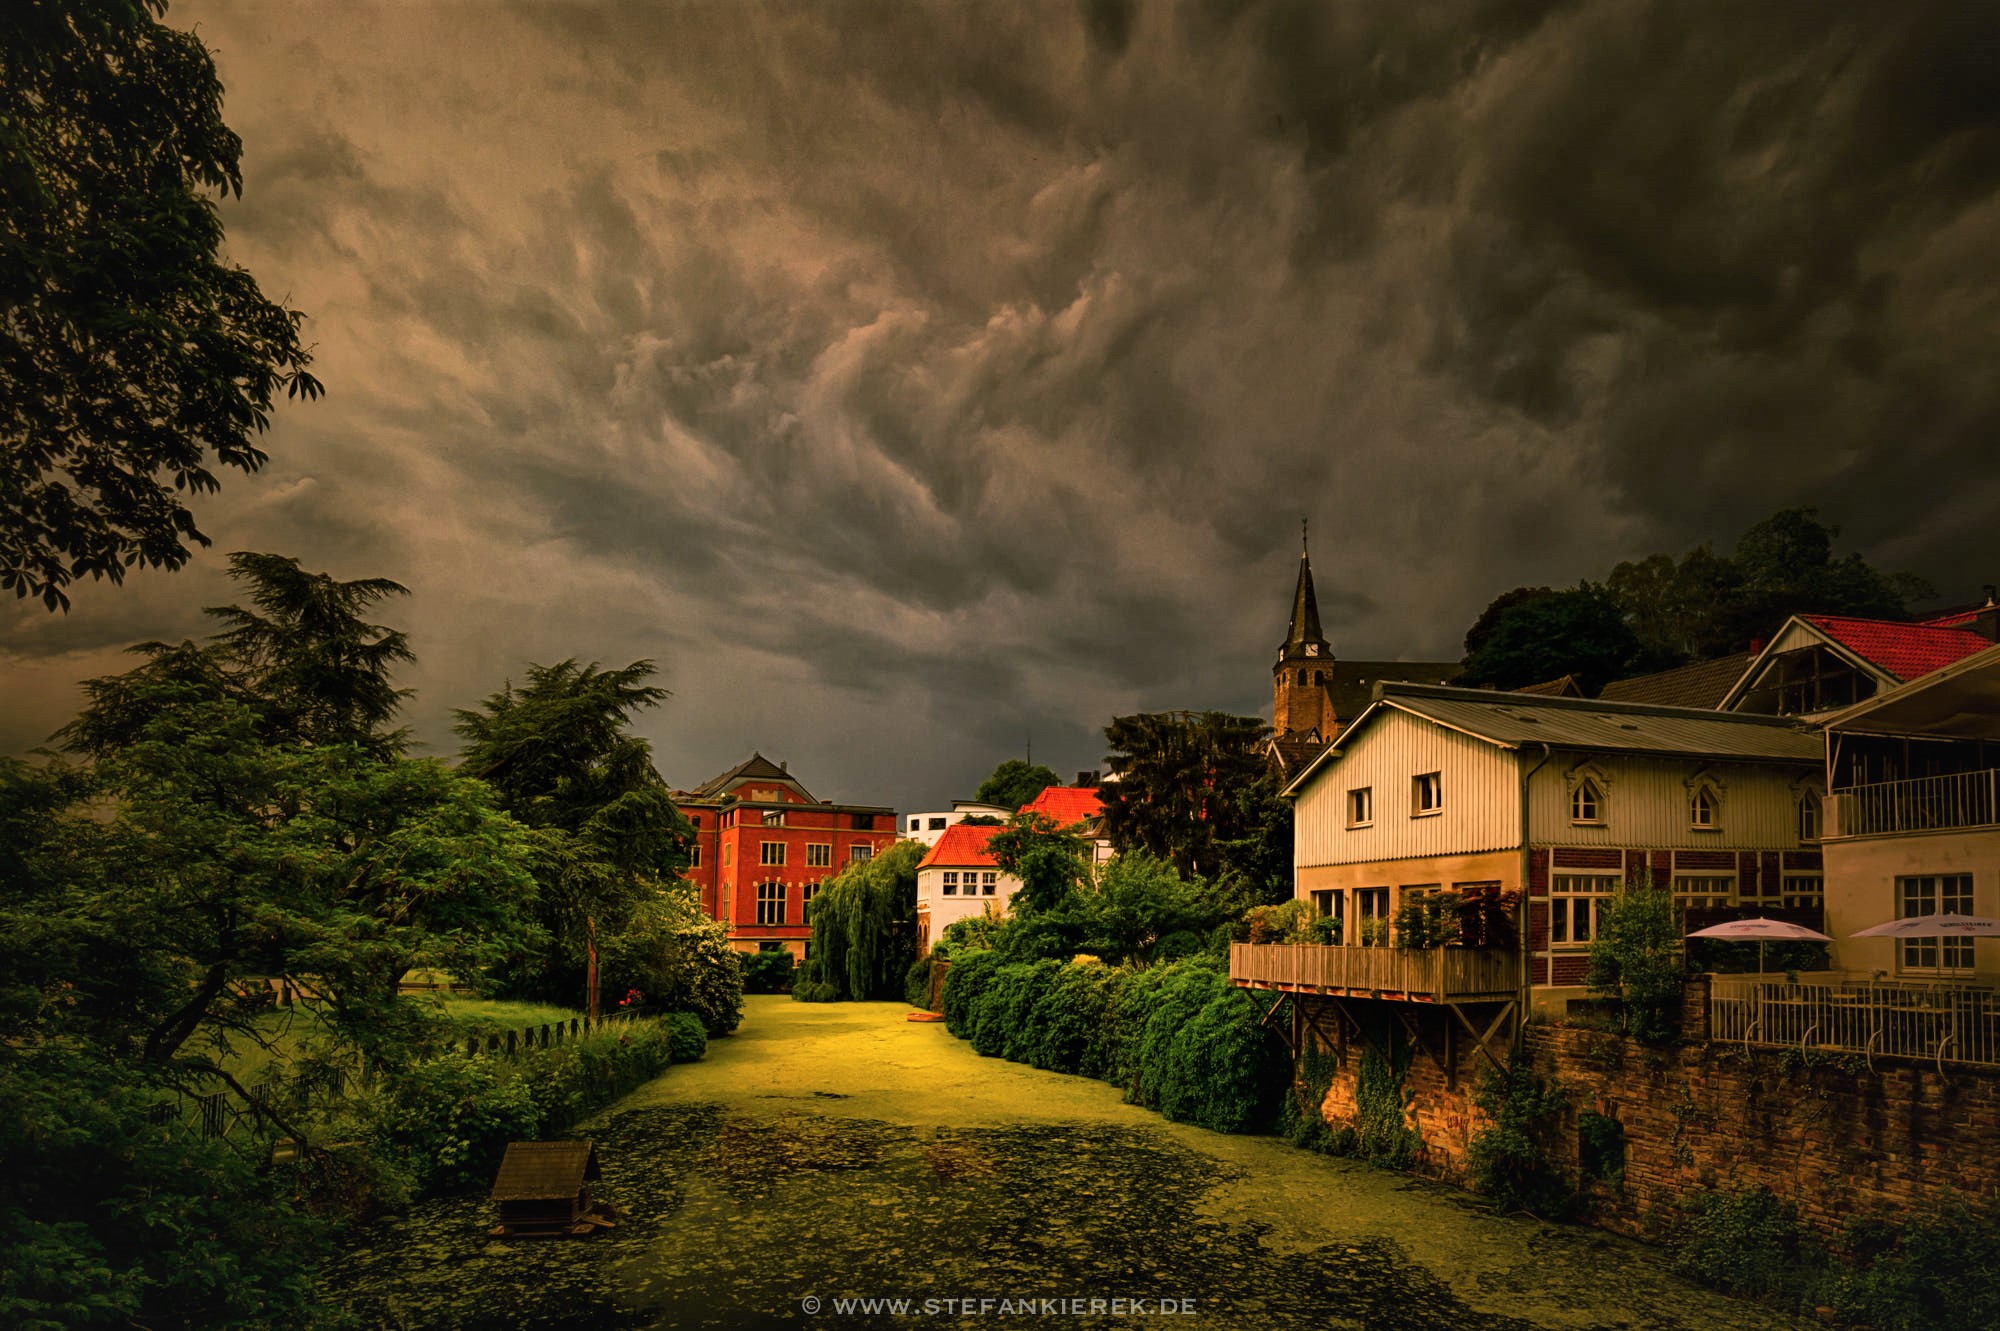 Heavy Clouds over Village by Stefan Kierek